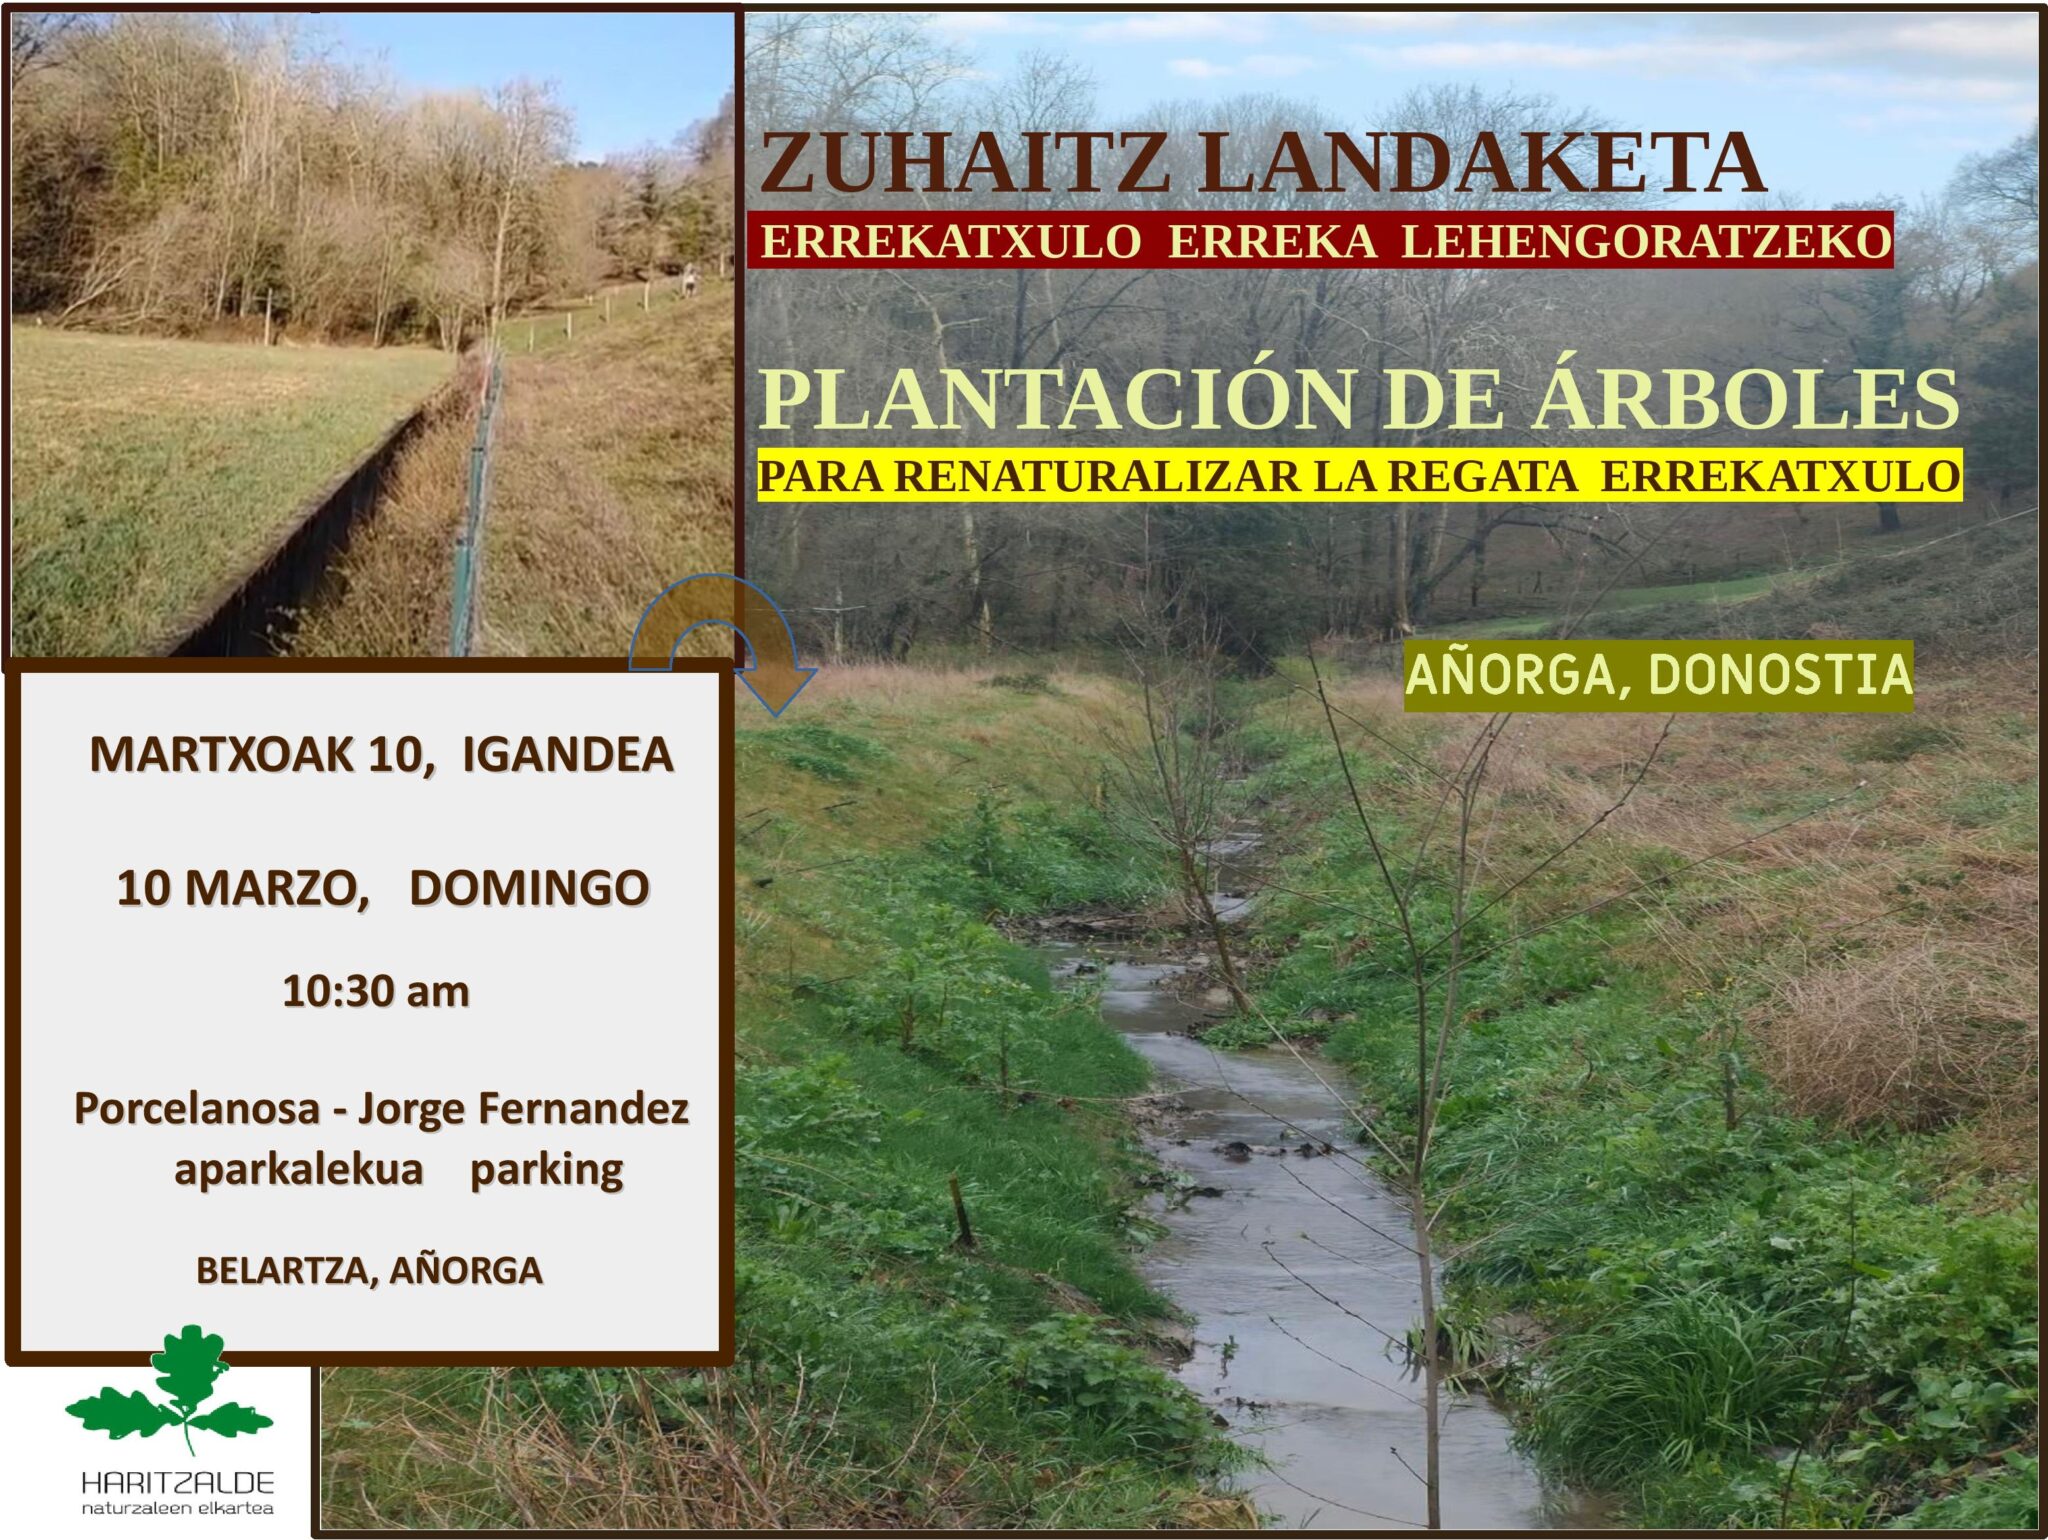 ERREKATXULO LANDAKETA KARTELA scaled - Haritzalde invita a plantar árboles en Errekatxulo (Añorga)